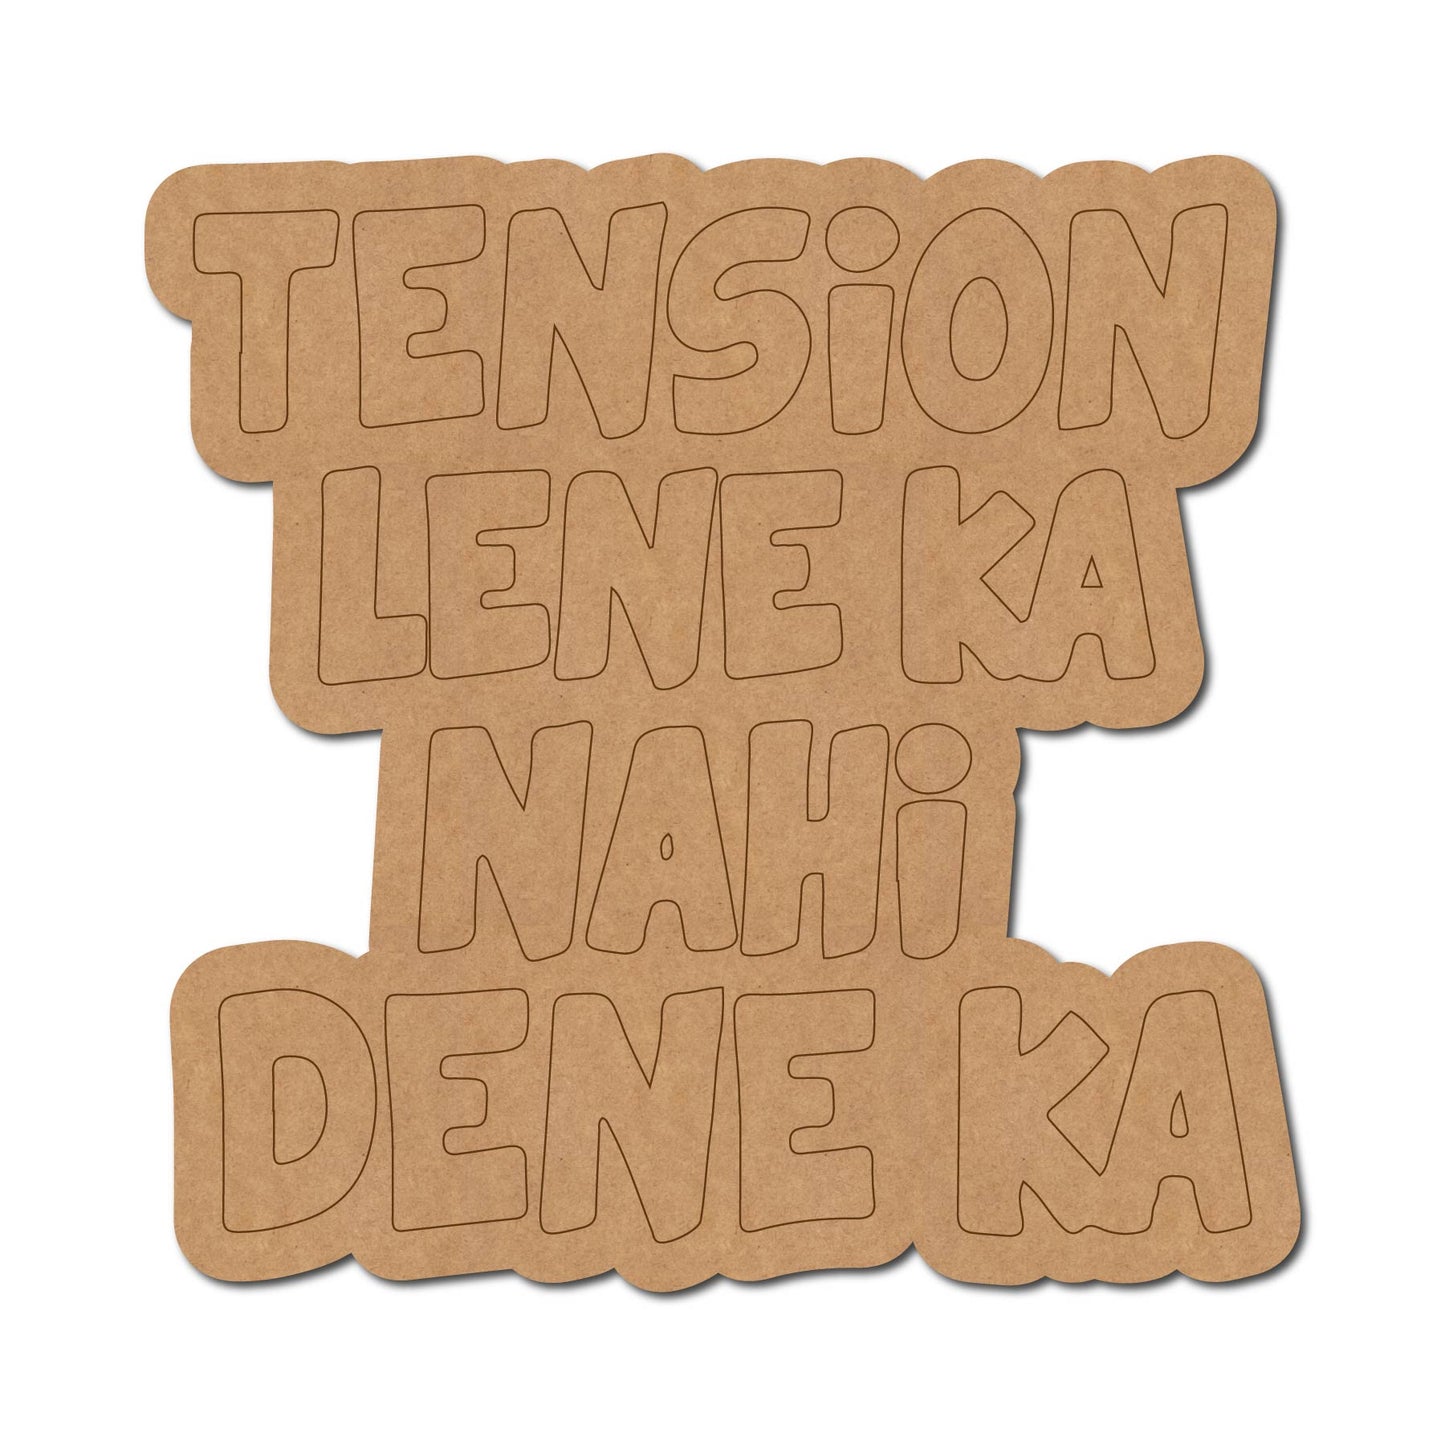 Tension Lene Ka Nahi Dene Ka Text Pre Marked MDF Design 1